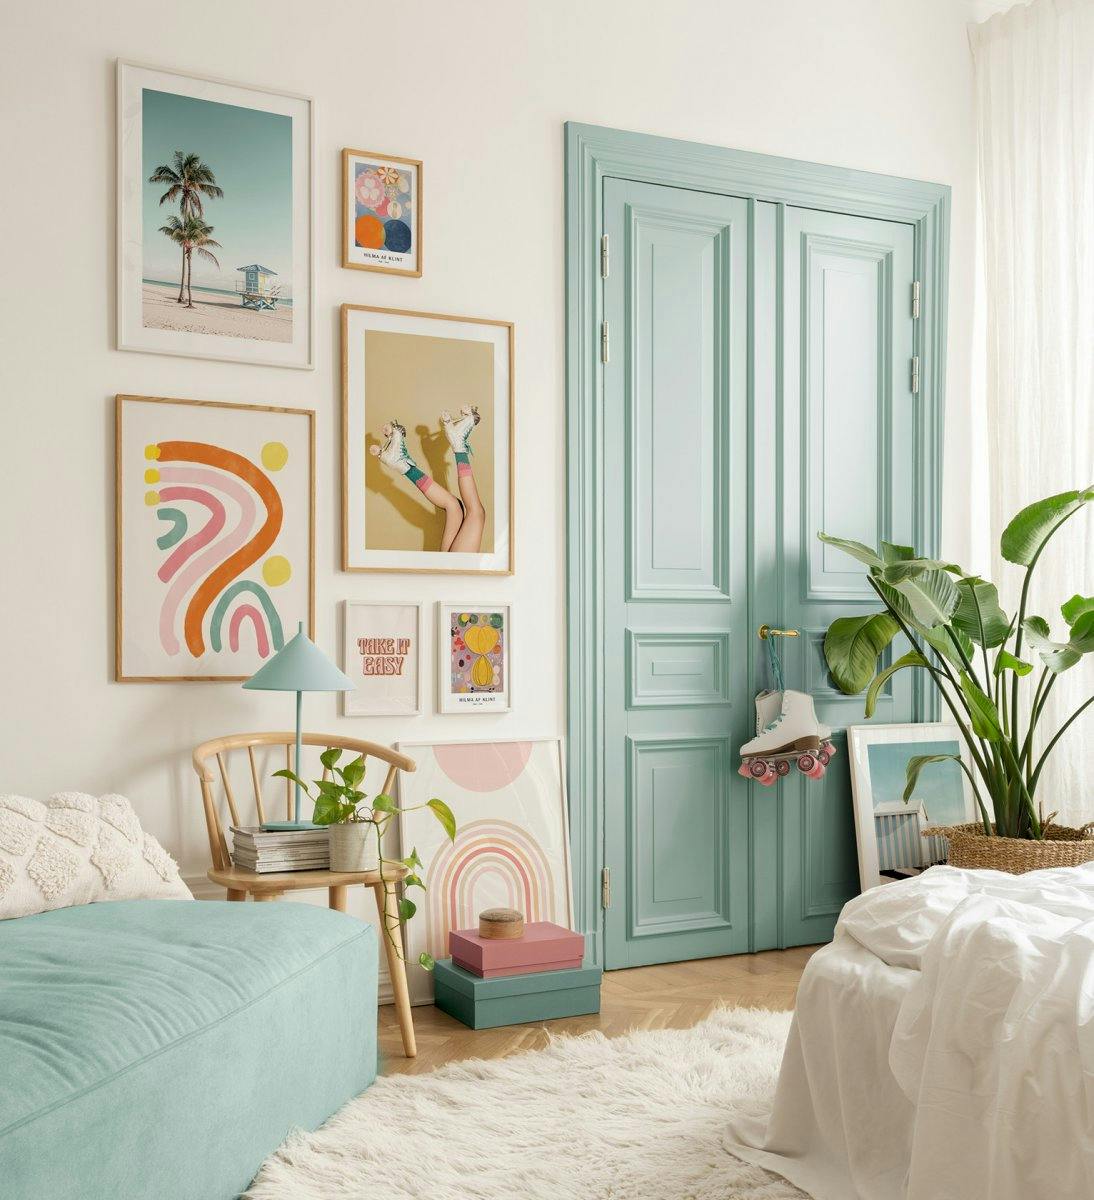 Tavelvägg med foto och citatposters i lekfulla färger för en retro stämning i sovrummet eller vardagsrummet